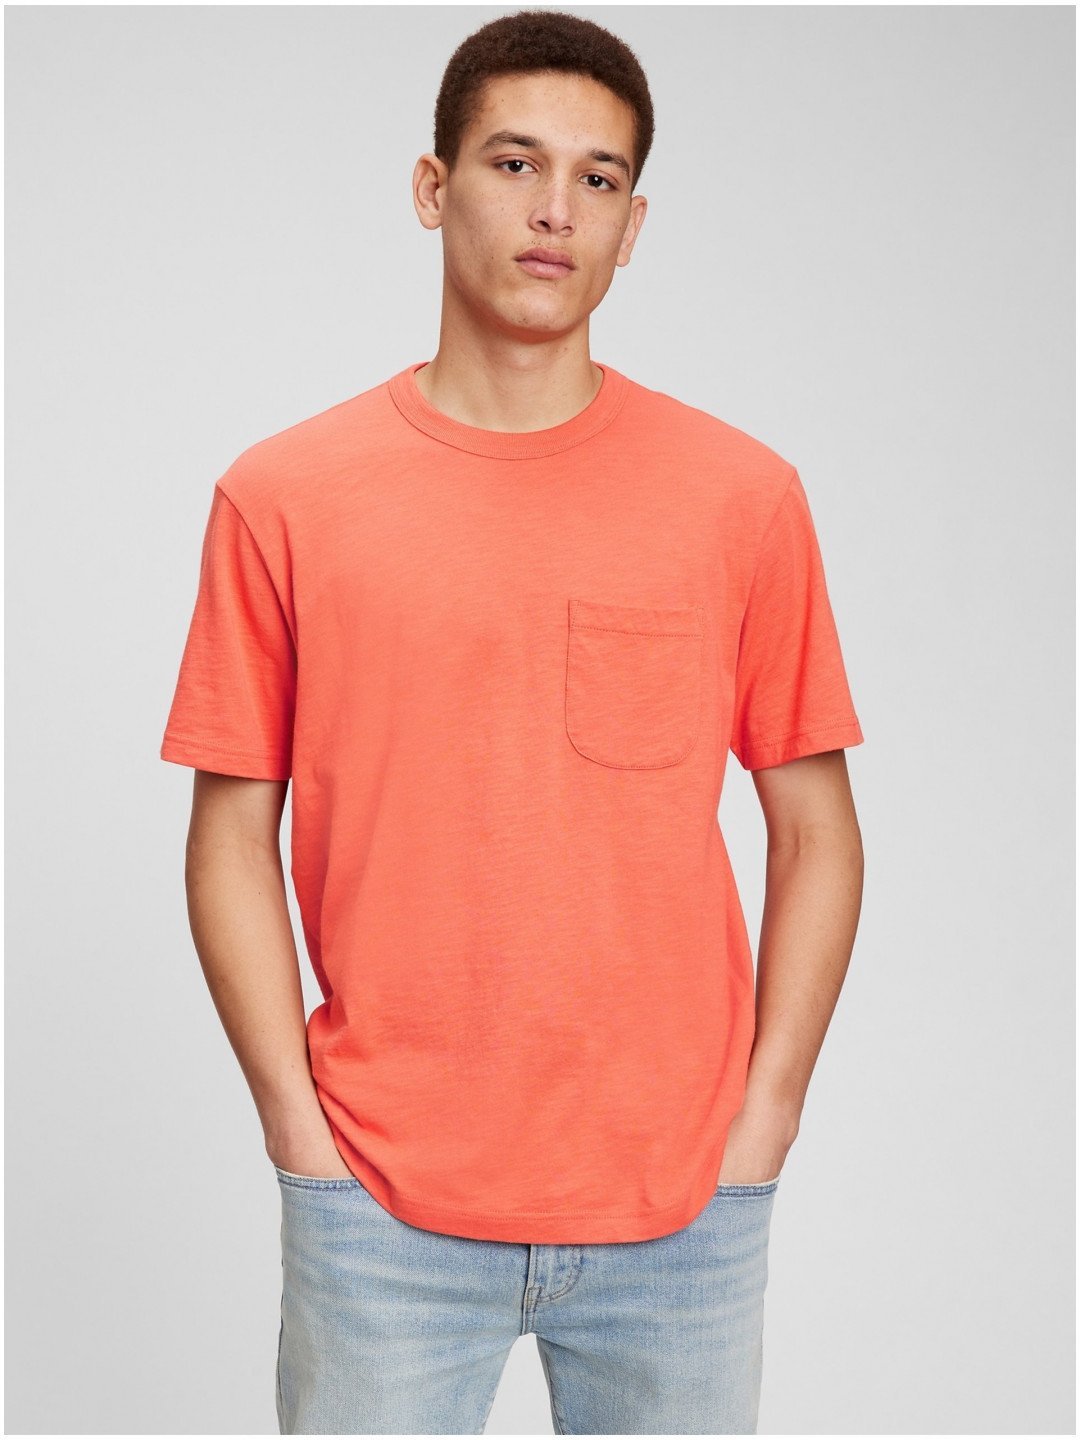 Oranžové pánské bavlněné tričko s kapsičkou GAP